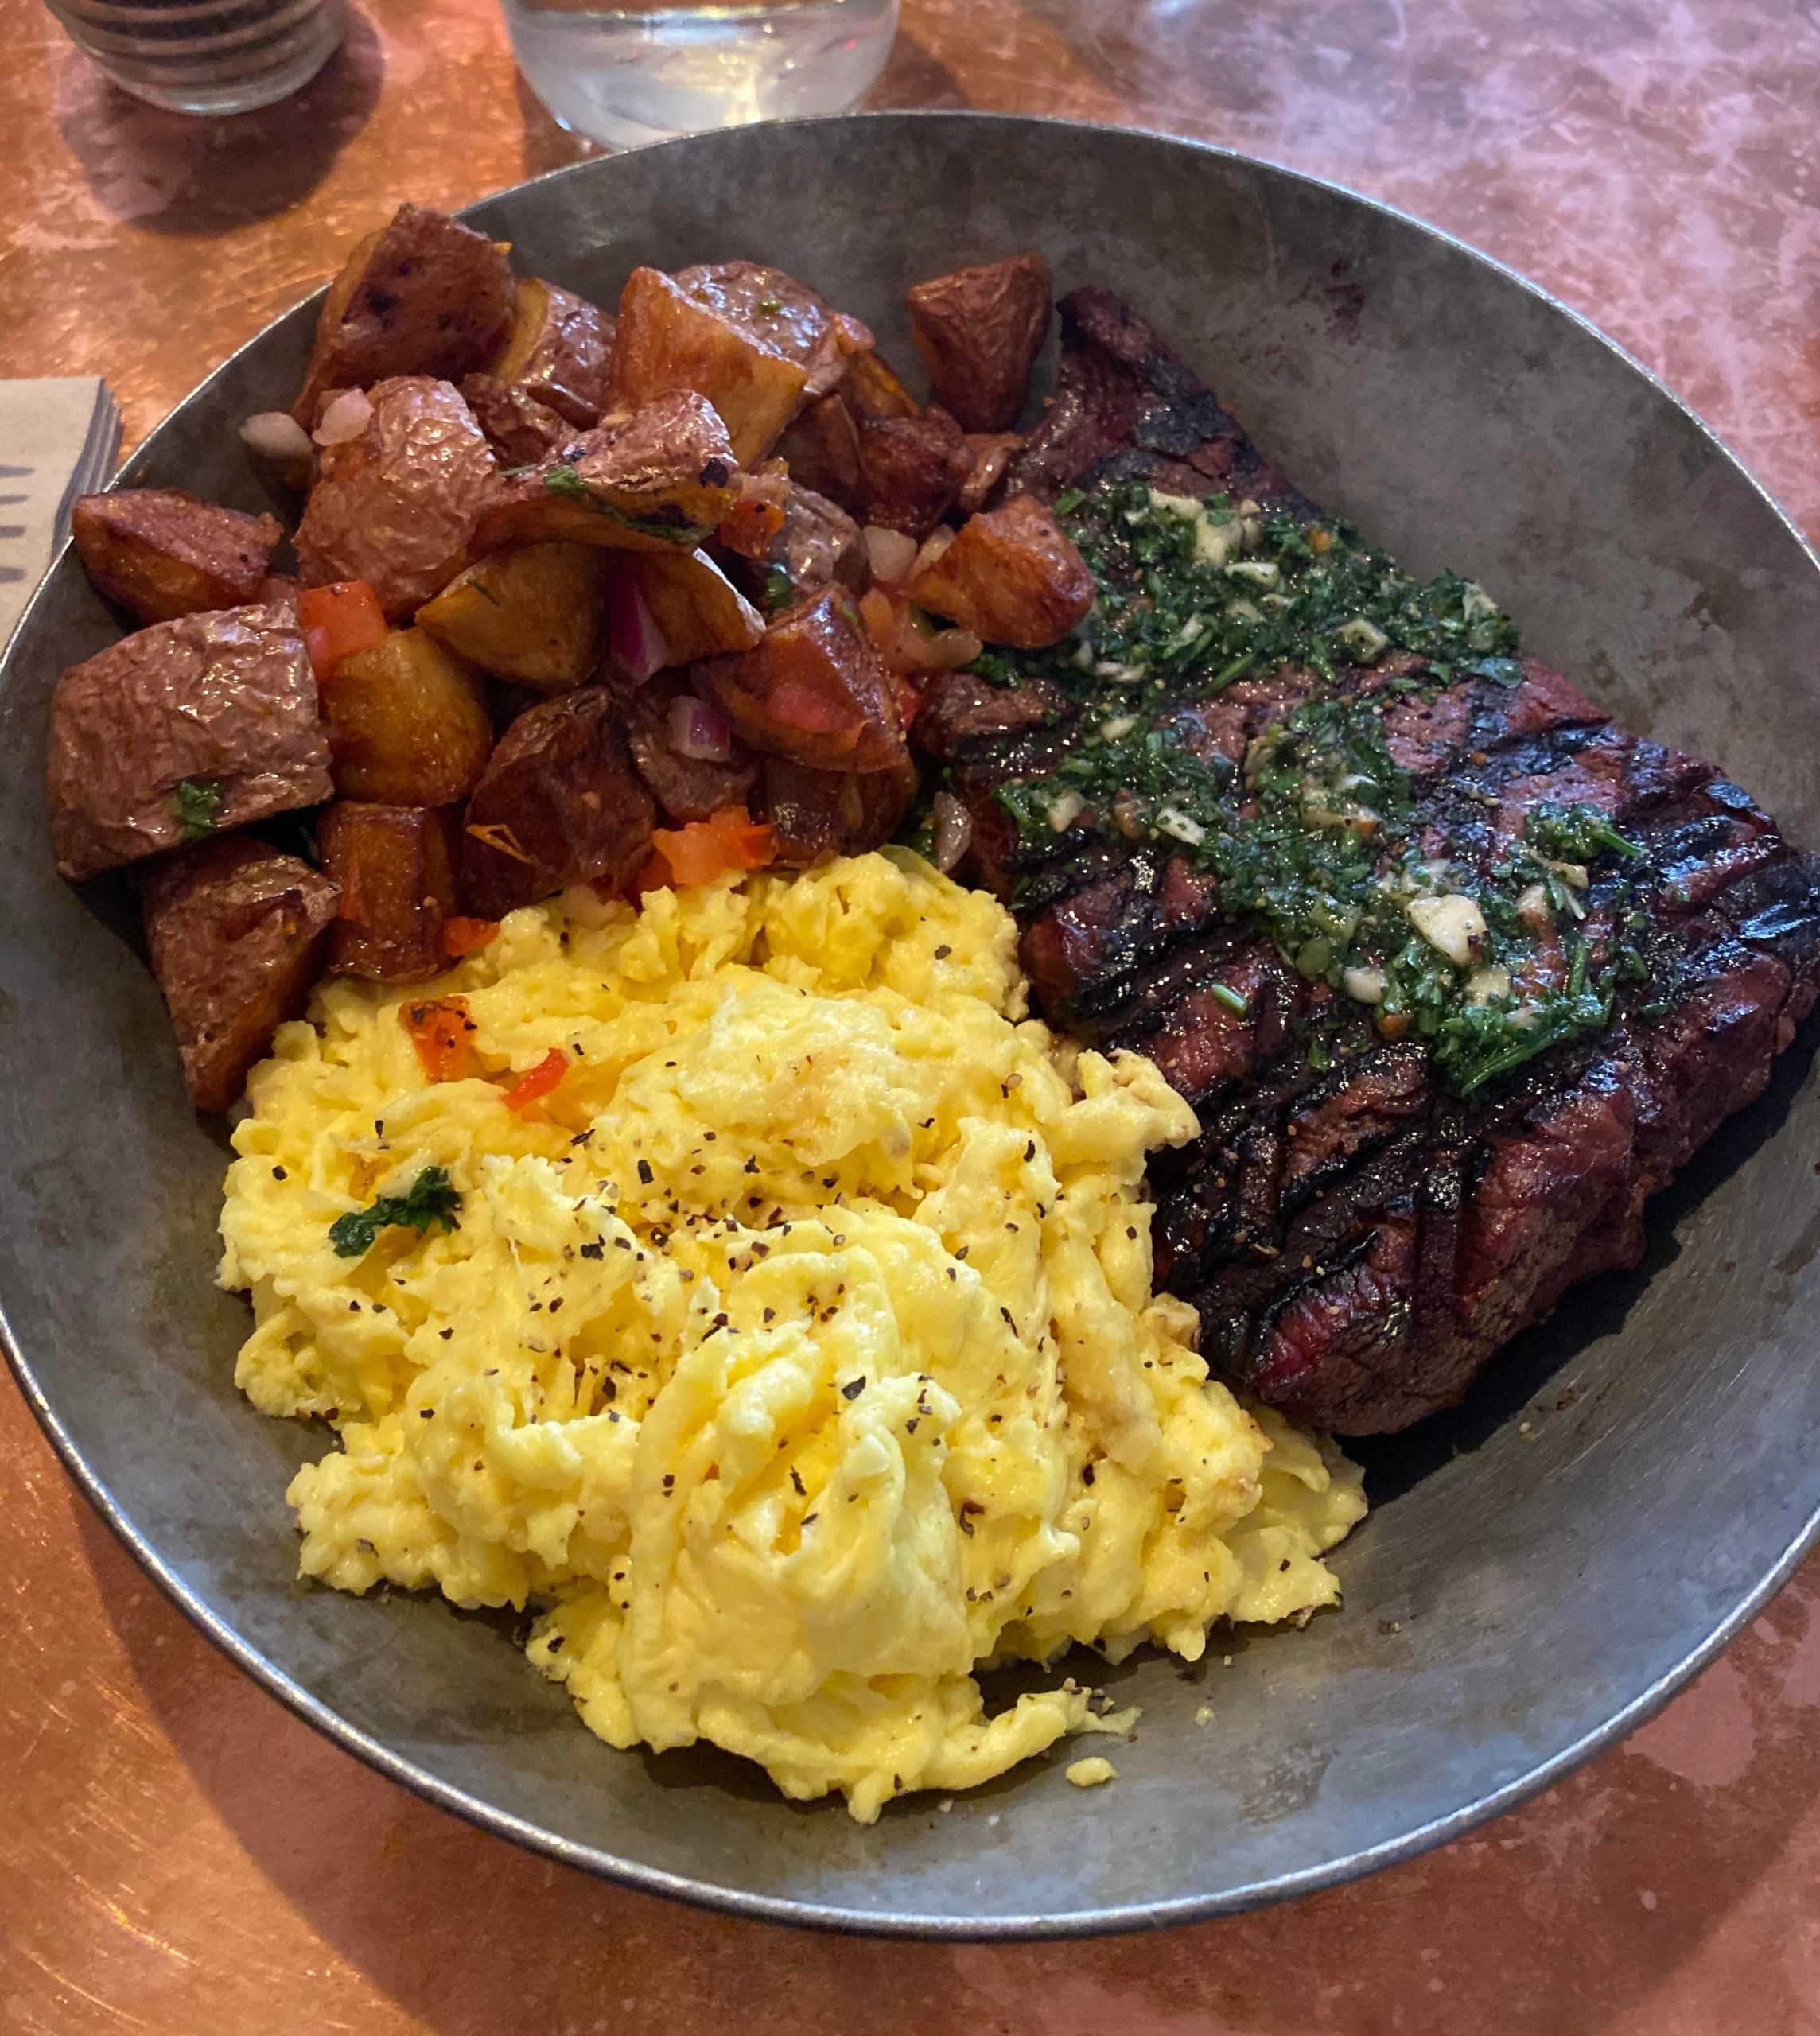 Steak and eggs in Las Vegas! : BreakfastFood